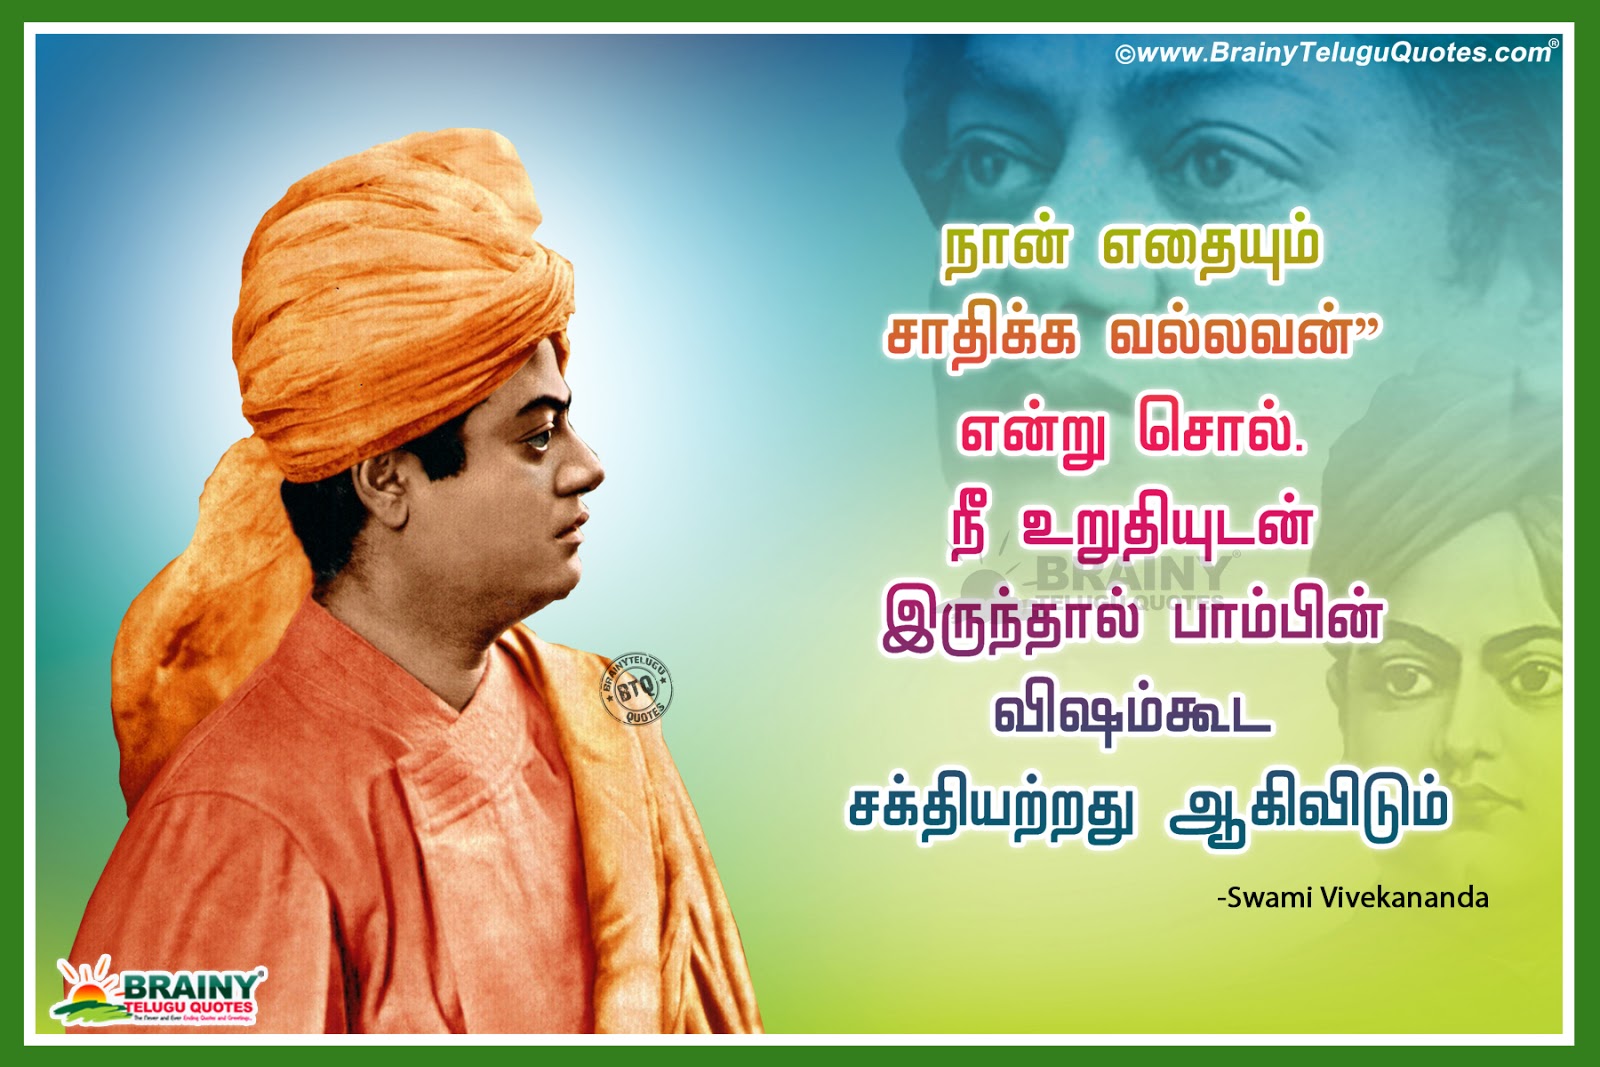 Swami Vivekananda Trending Most Inspirational Sayings in Tamil